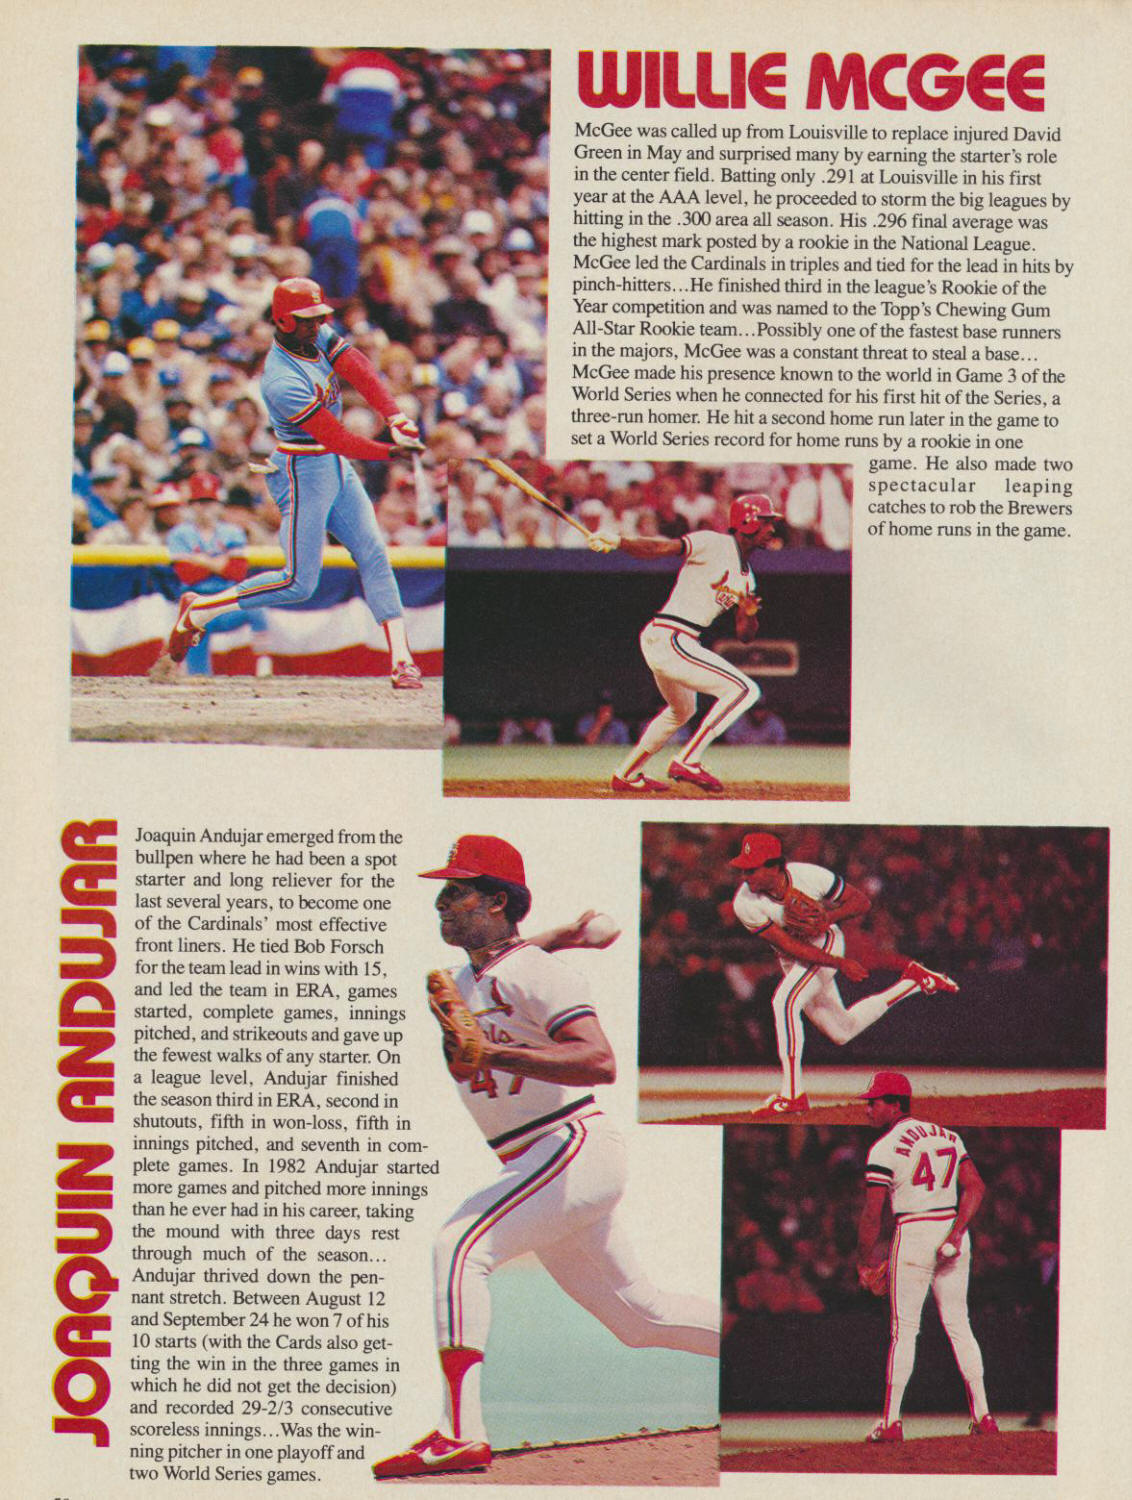 1983 St. Louis Cardinals Official Scorebook